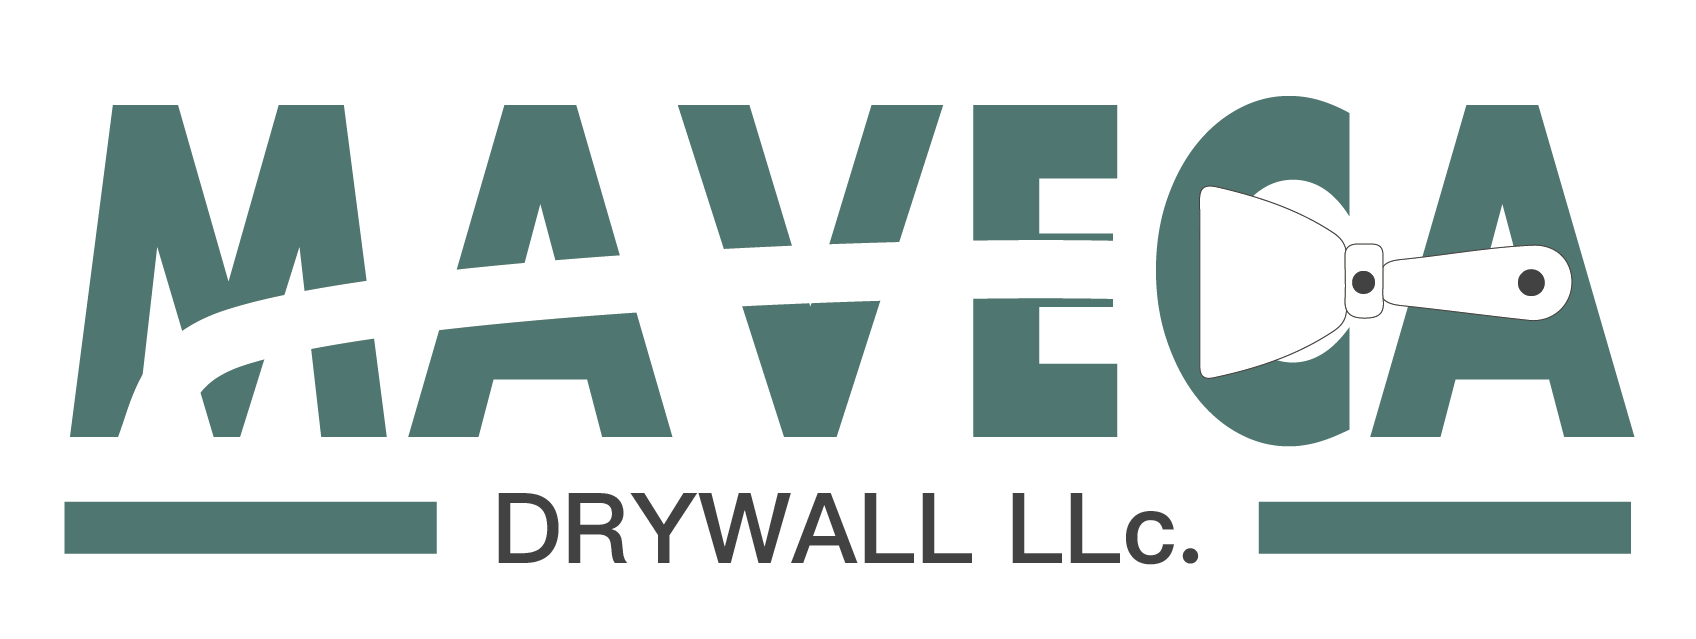 Maveca Drywall